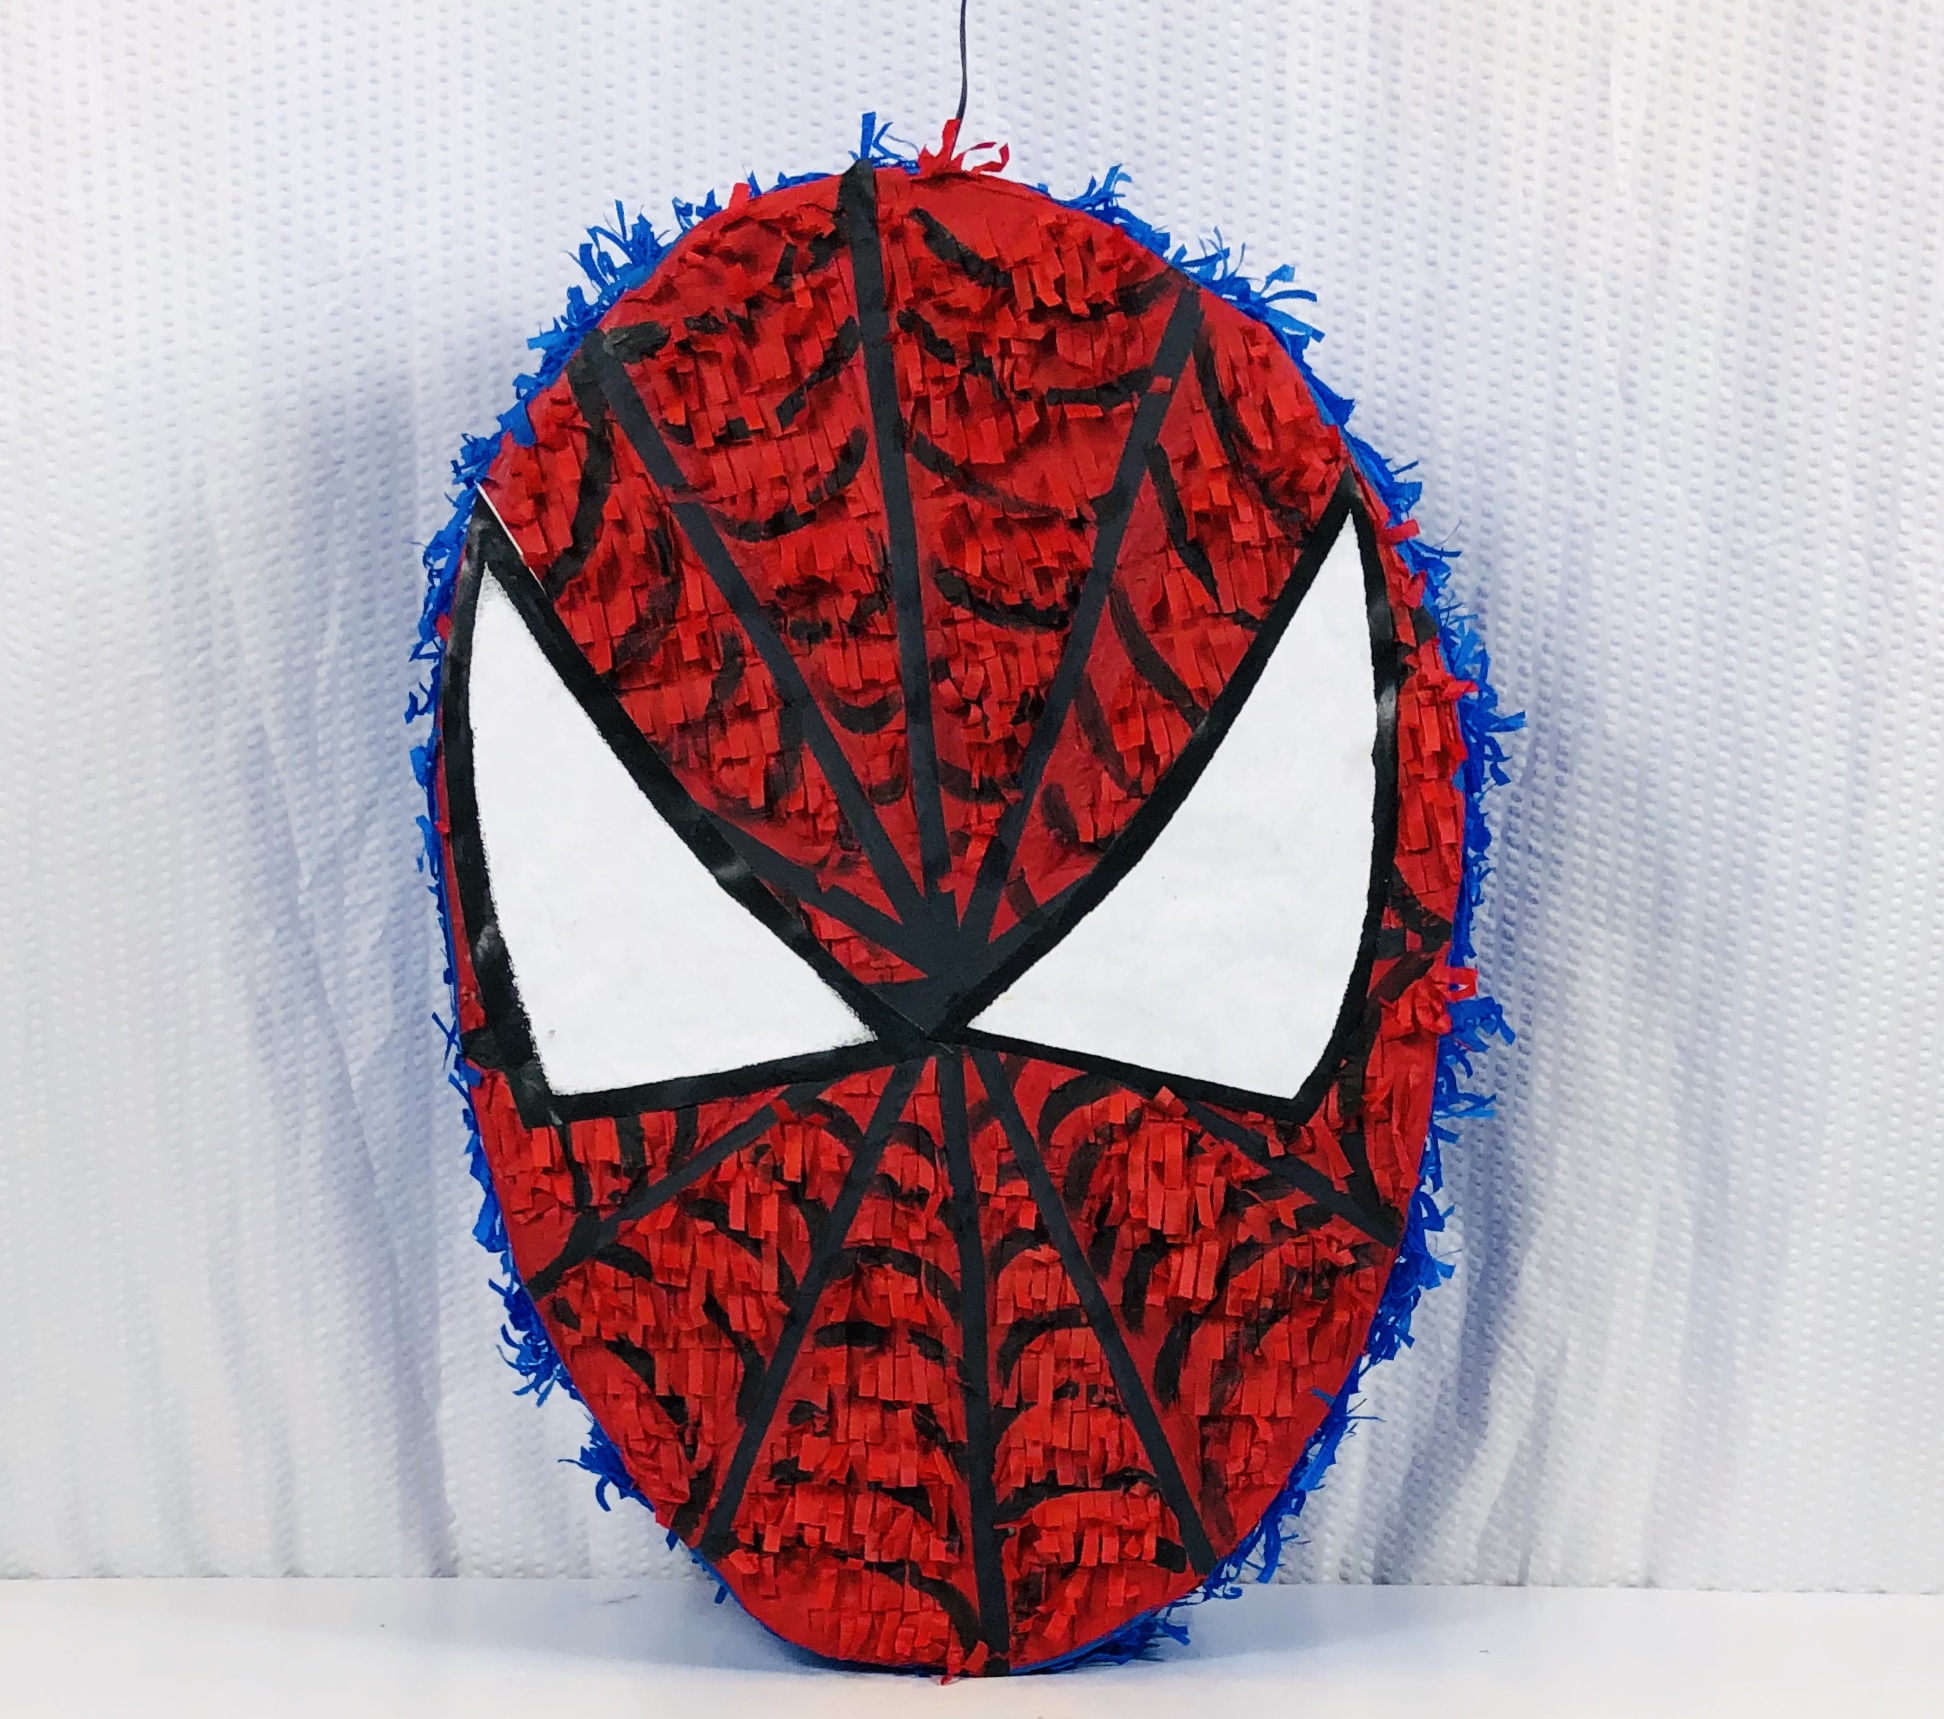 Piñata Spiderman  Piñatas de spiderman, Spiderman, Piñata